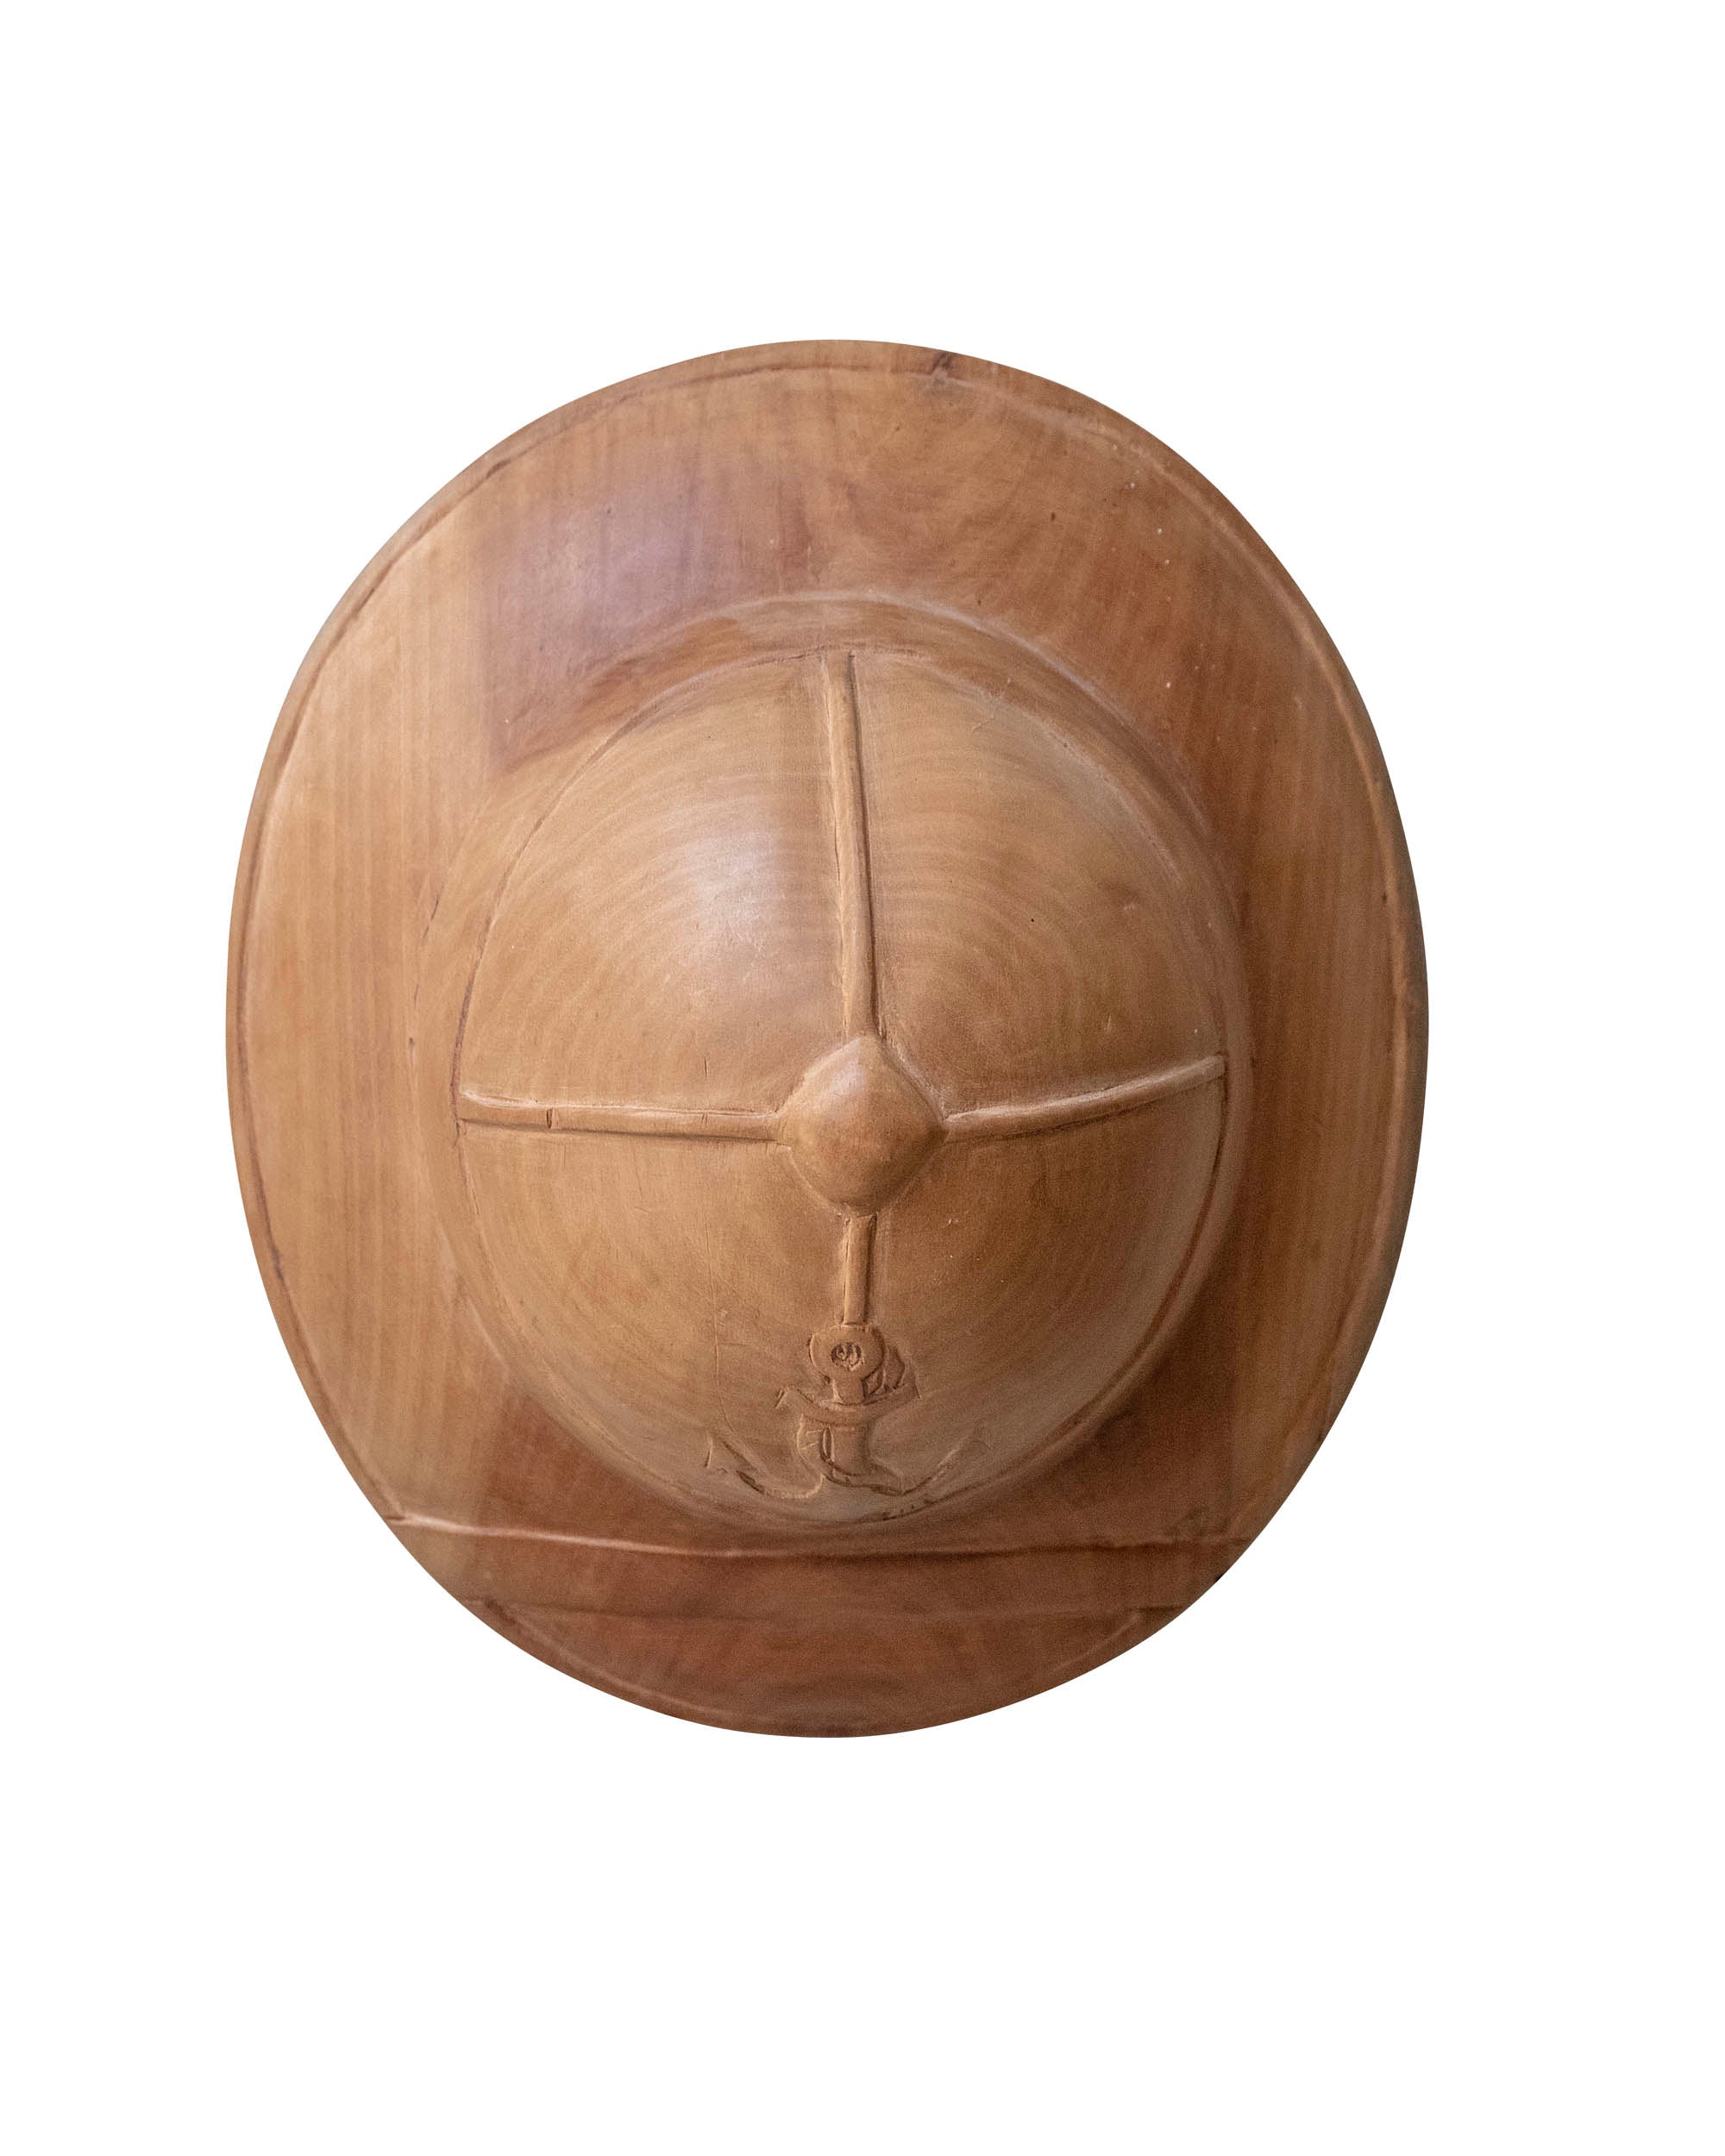 Casque en bois avec emblème marin sculpté à la main